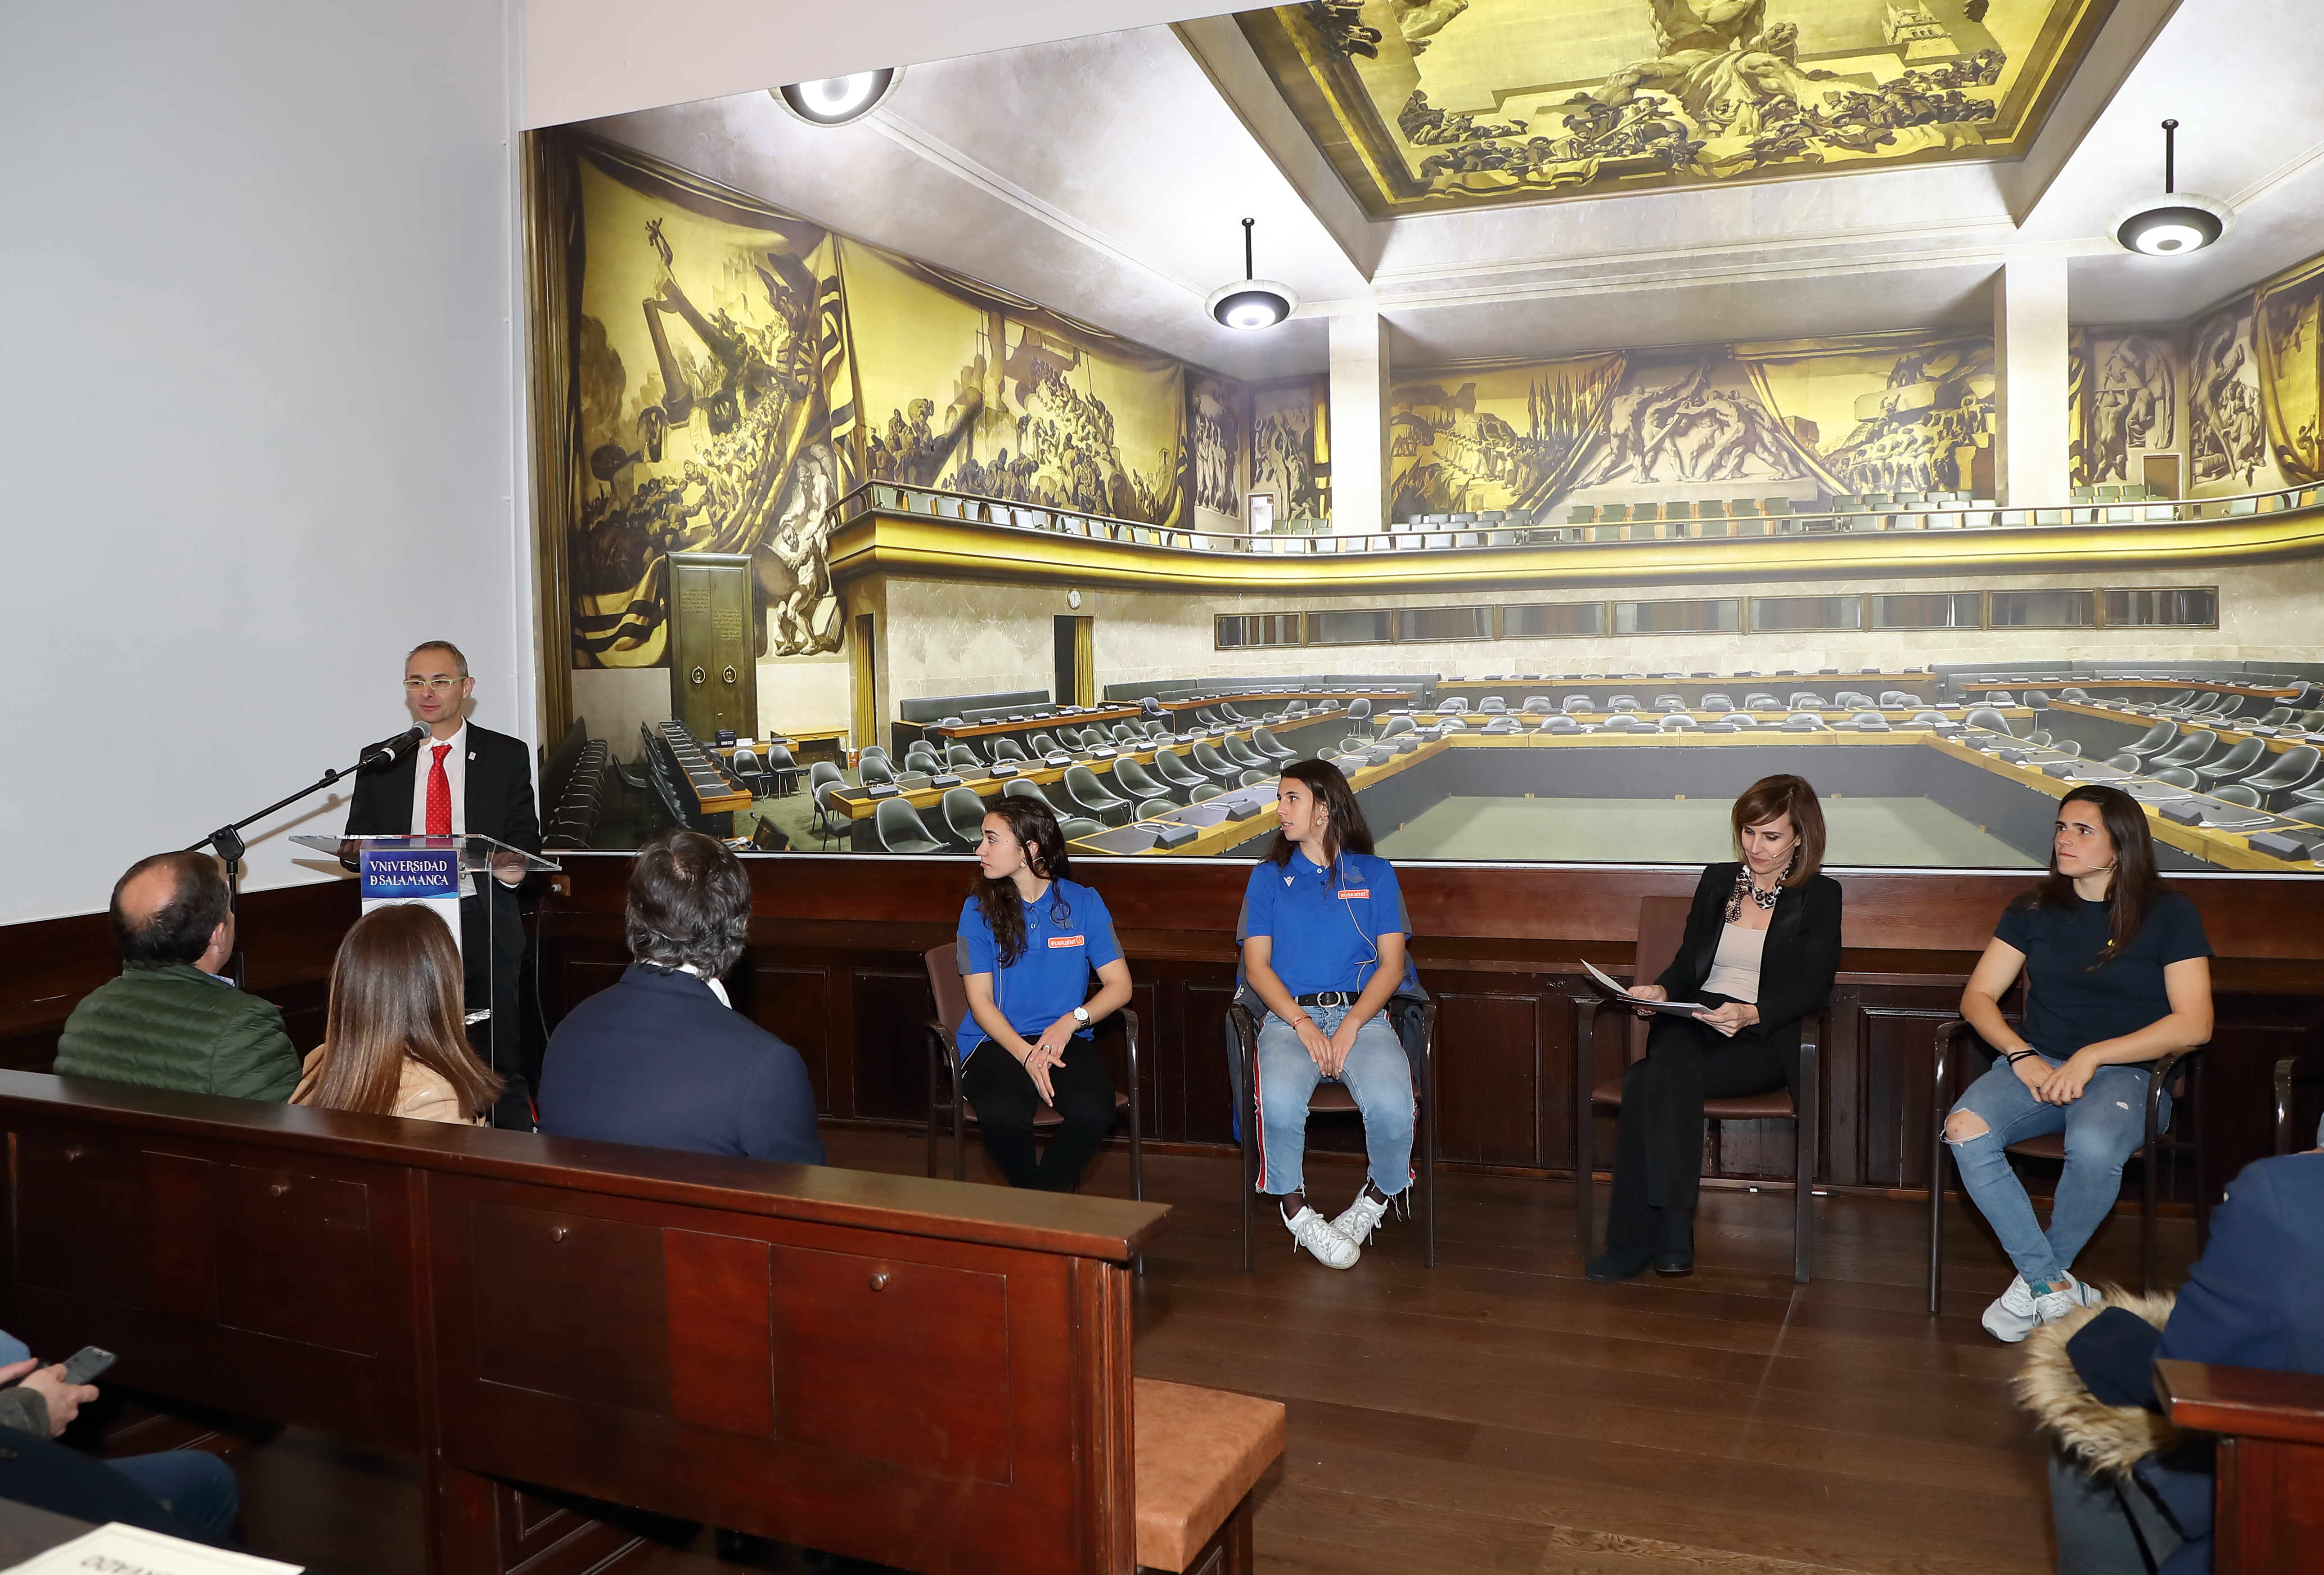 El rector presentó a las jugadoras Marta Torrejón y Andrea Pereira, del FC Barcelona, y Nahikari García y Maddi Torre, de la Real Socidad, visitaron la Biblioteca General